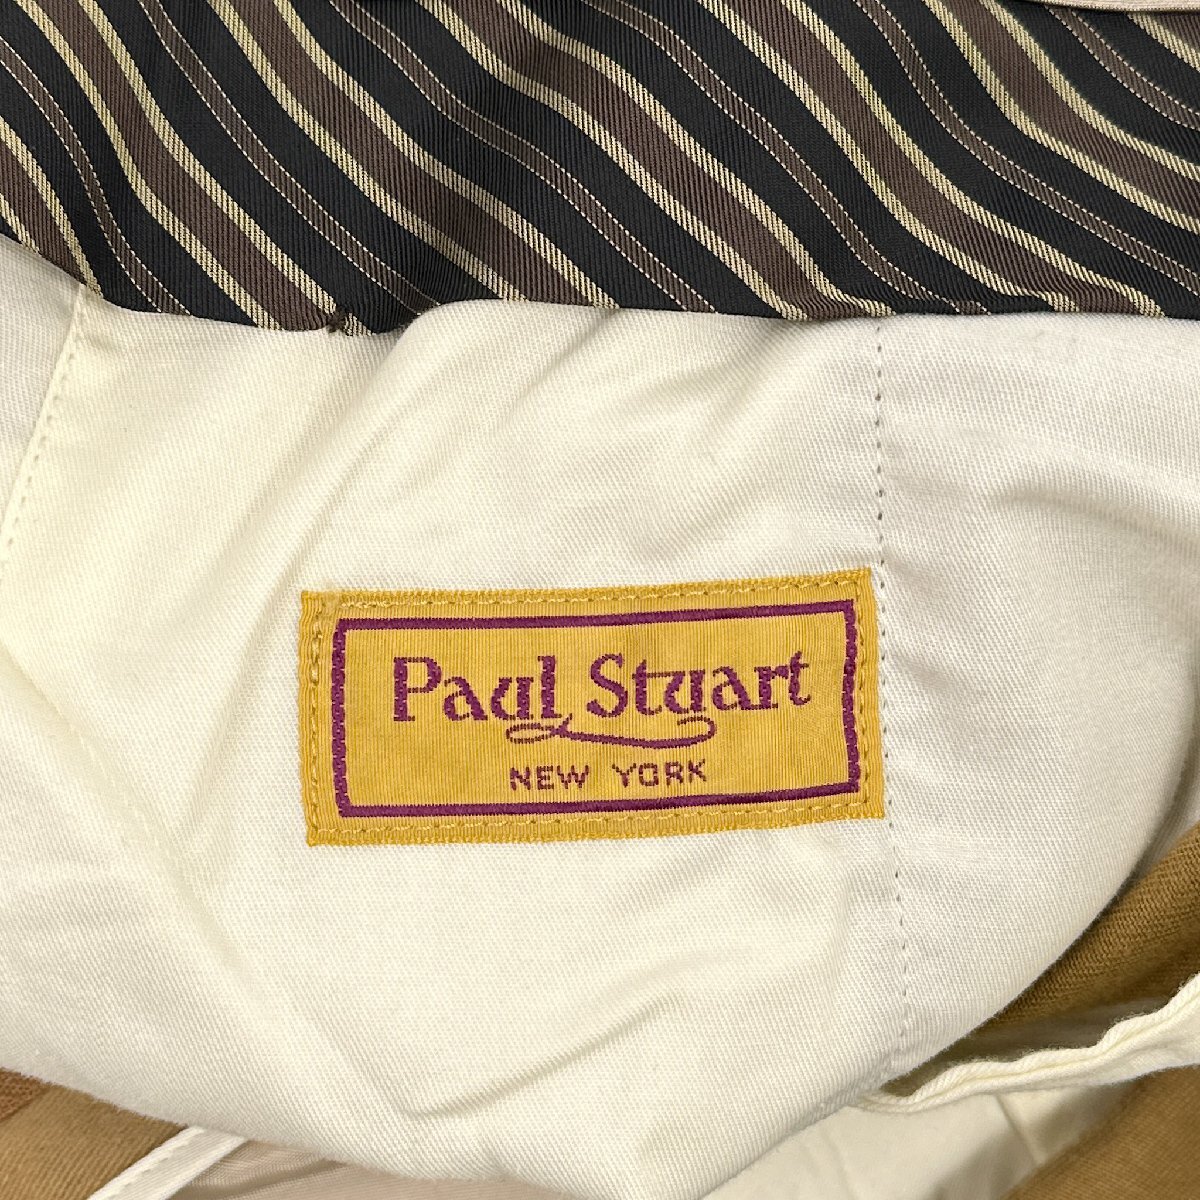 Paul Stuart ポールスチュアート 裾ダブル タック スラックスパンツ チノパン サイズ 88 /キャメル ベージュ系/メンズ/三陽商会/日本製_画像5